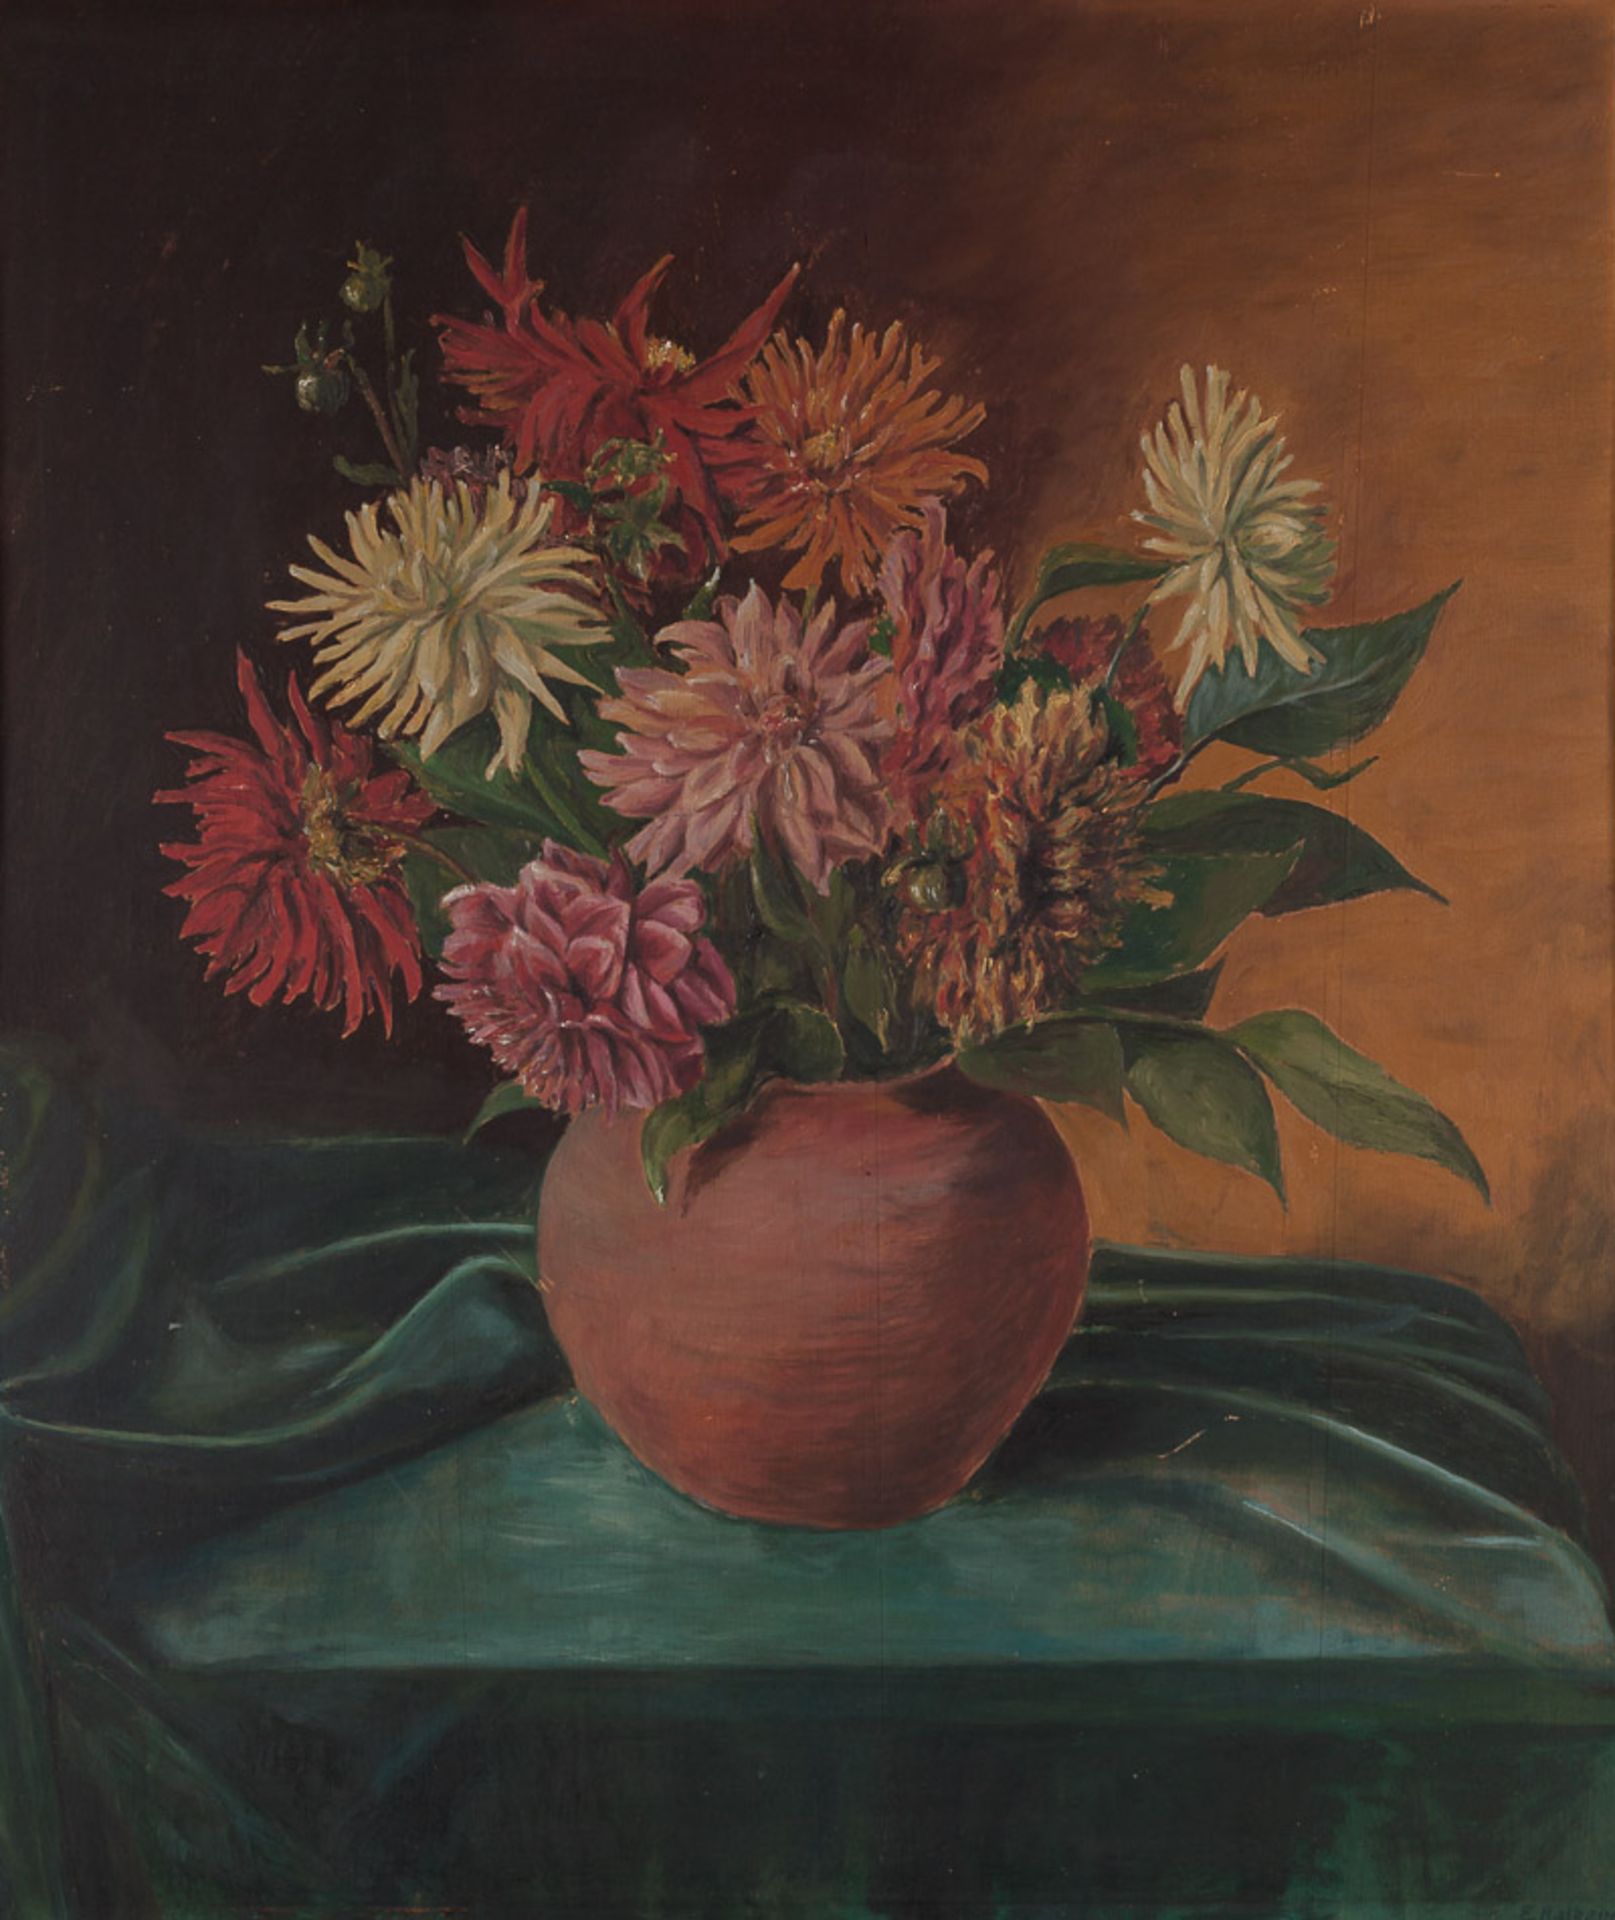 Künstler des 20. Jhd."Blumenstillleben"
Gemälde Öl/Holz, 83,5 cm x 71 cm, 
rechts unten undeutlich